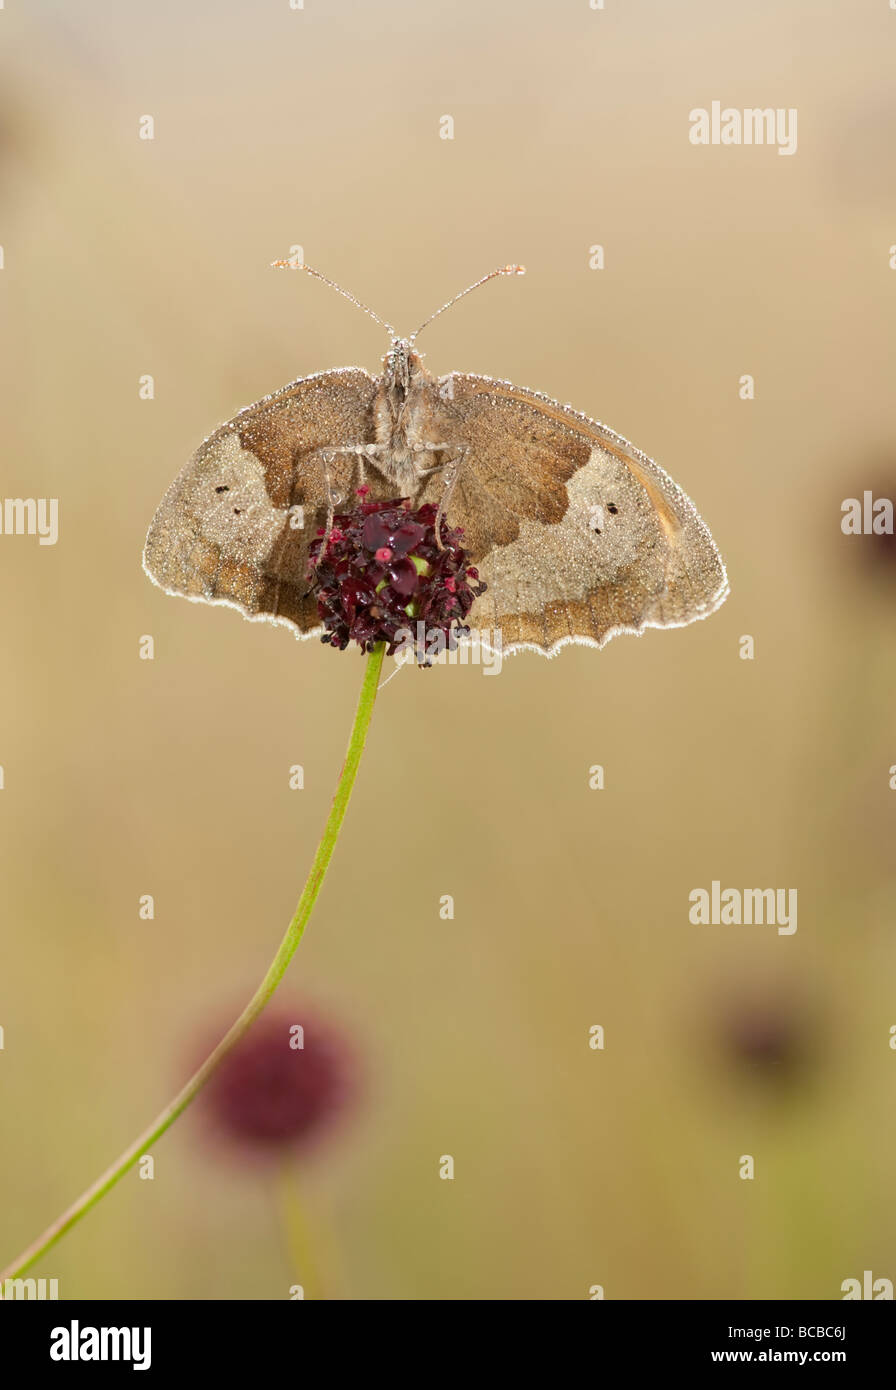 meadow brown butterfly in morning dew on geat burnet flower Stock Photo